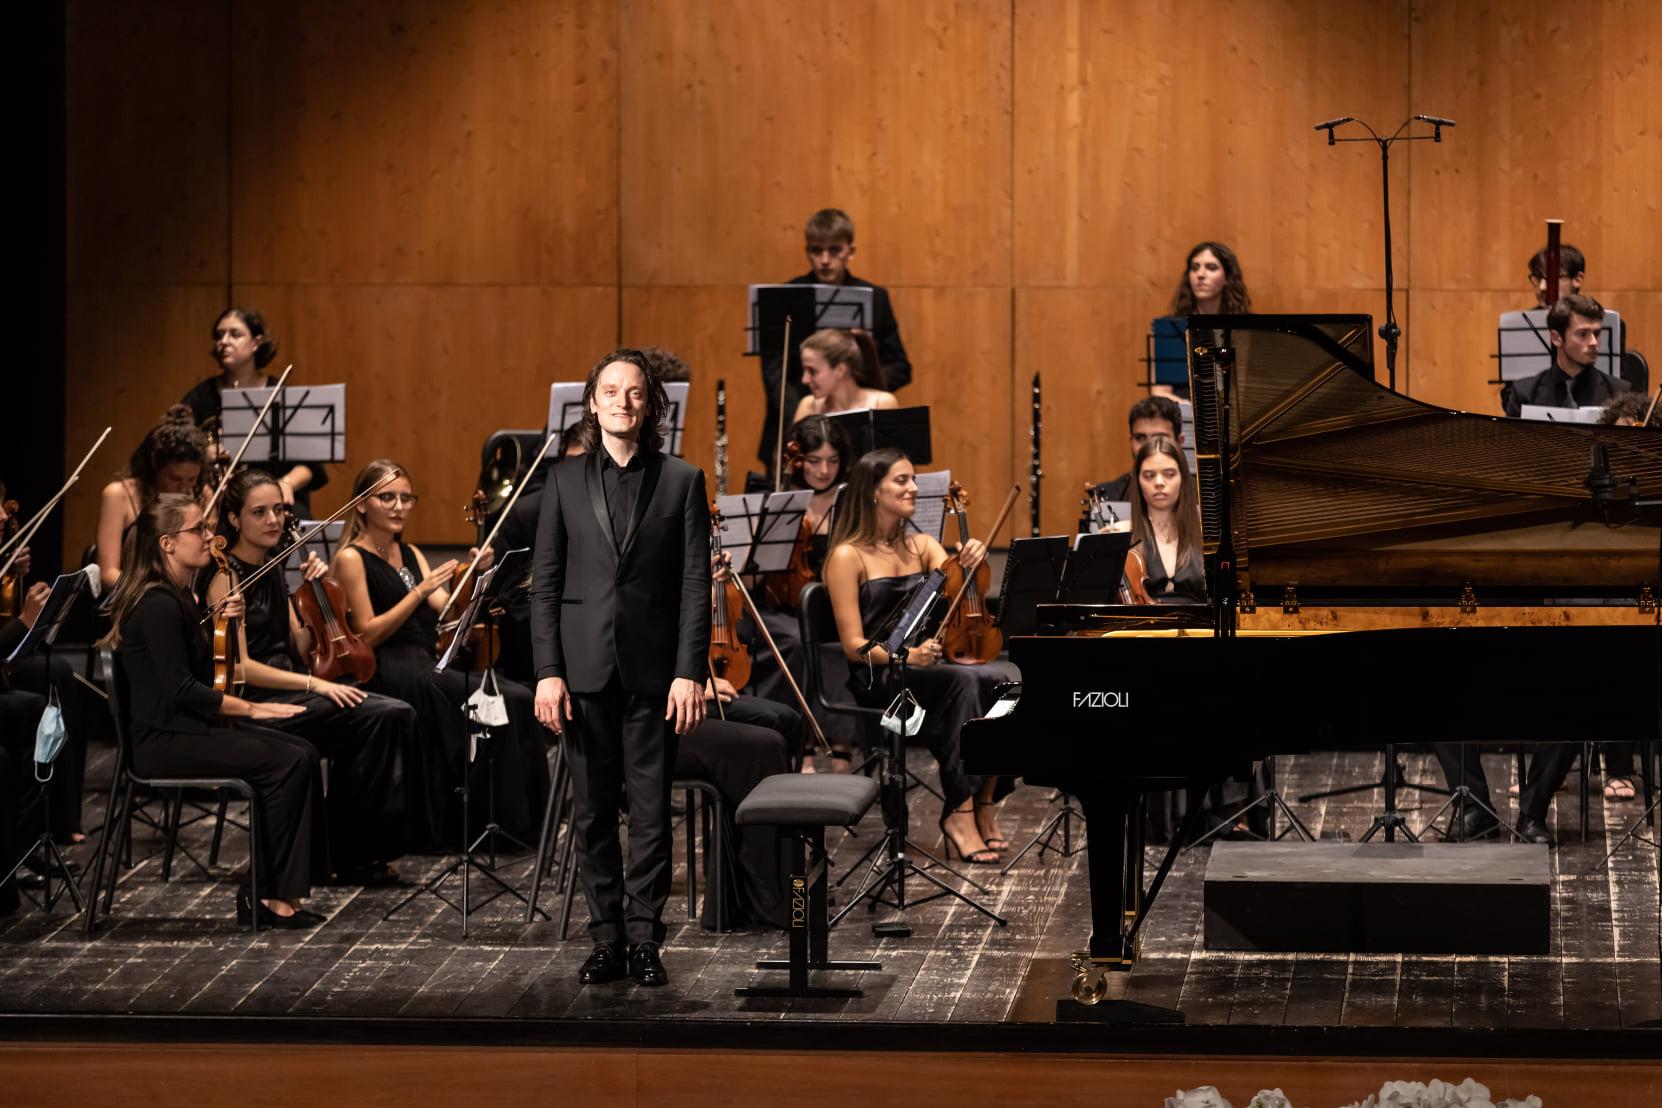 Alessandro Taverna e l'Orchestra Giovanile Italiana